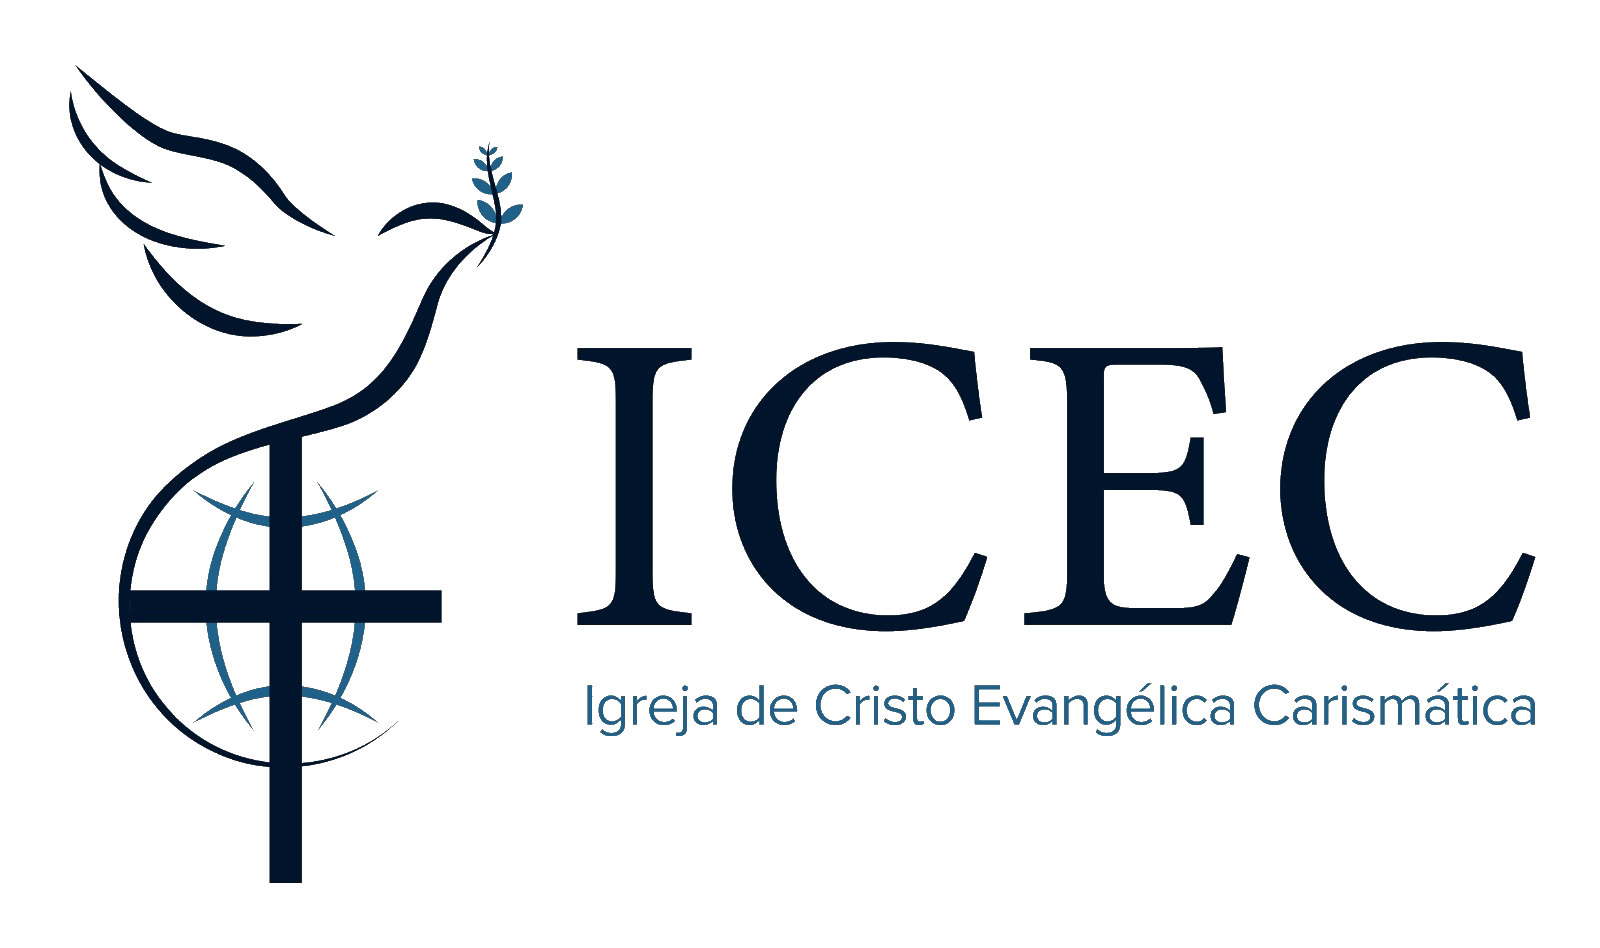 ICEC – Igreja de Cristo Evangélica Carismática Logo